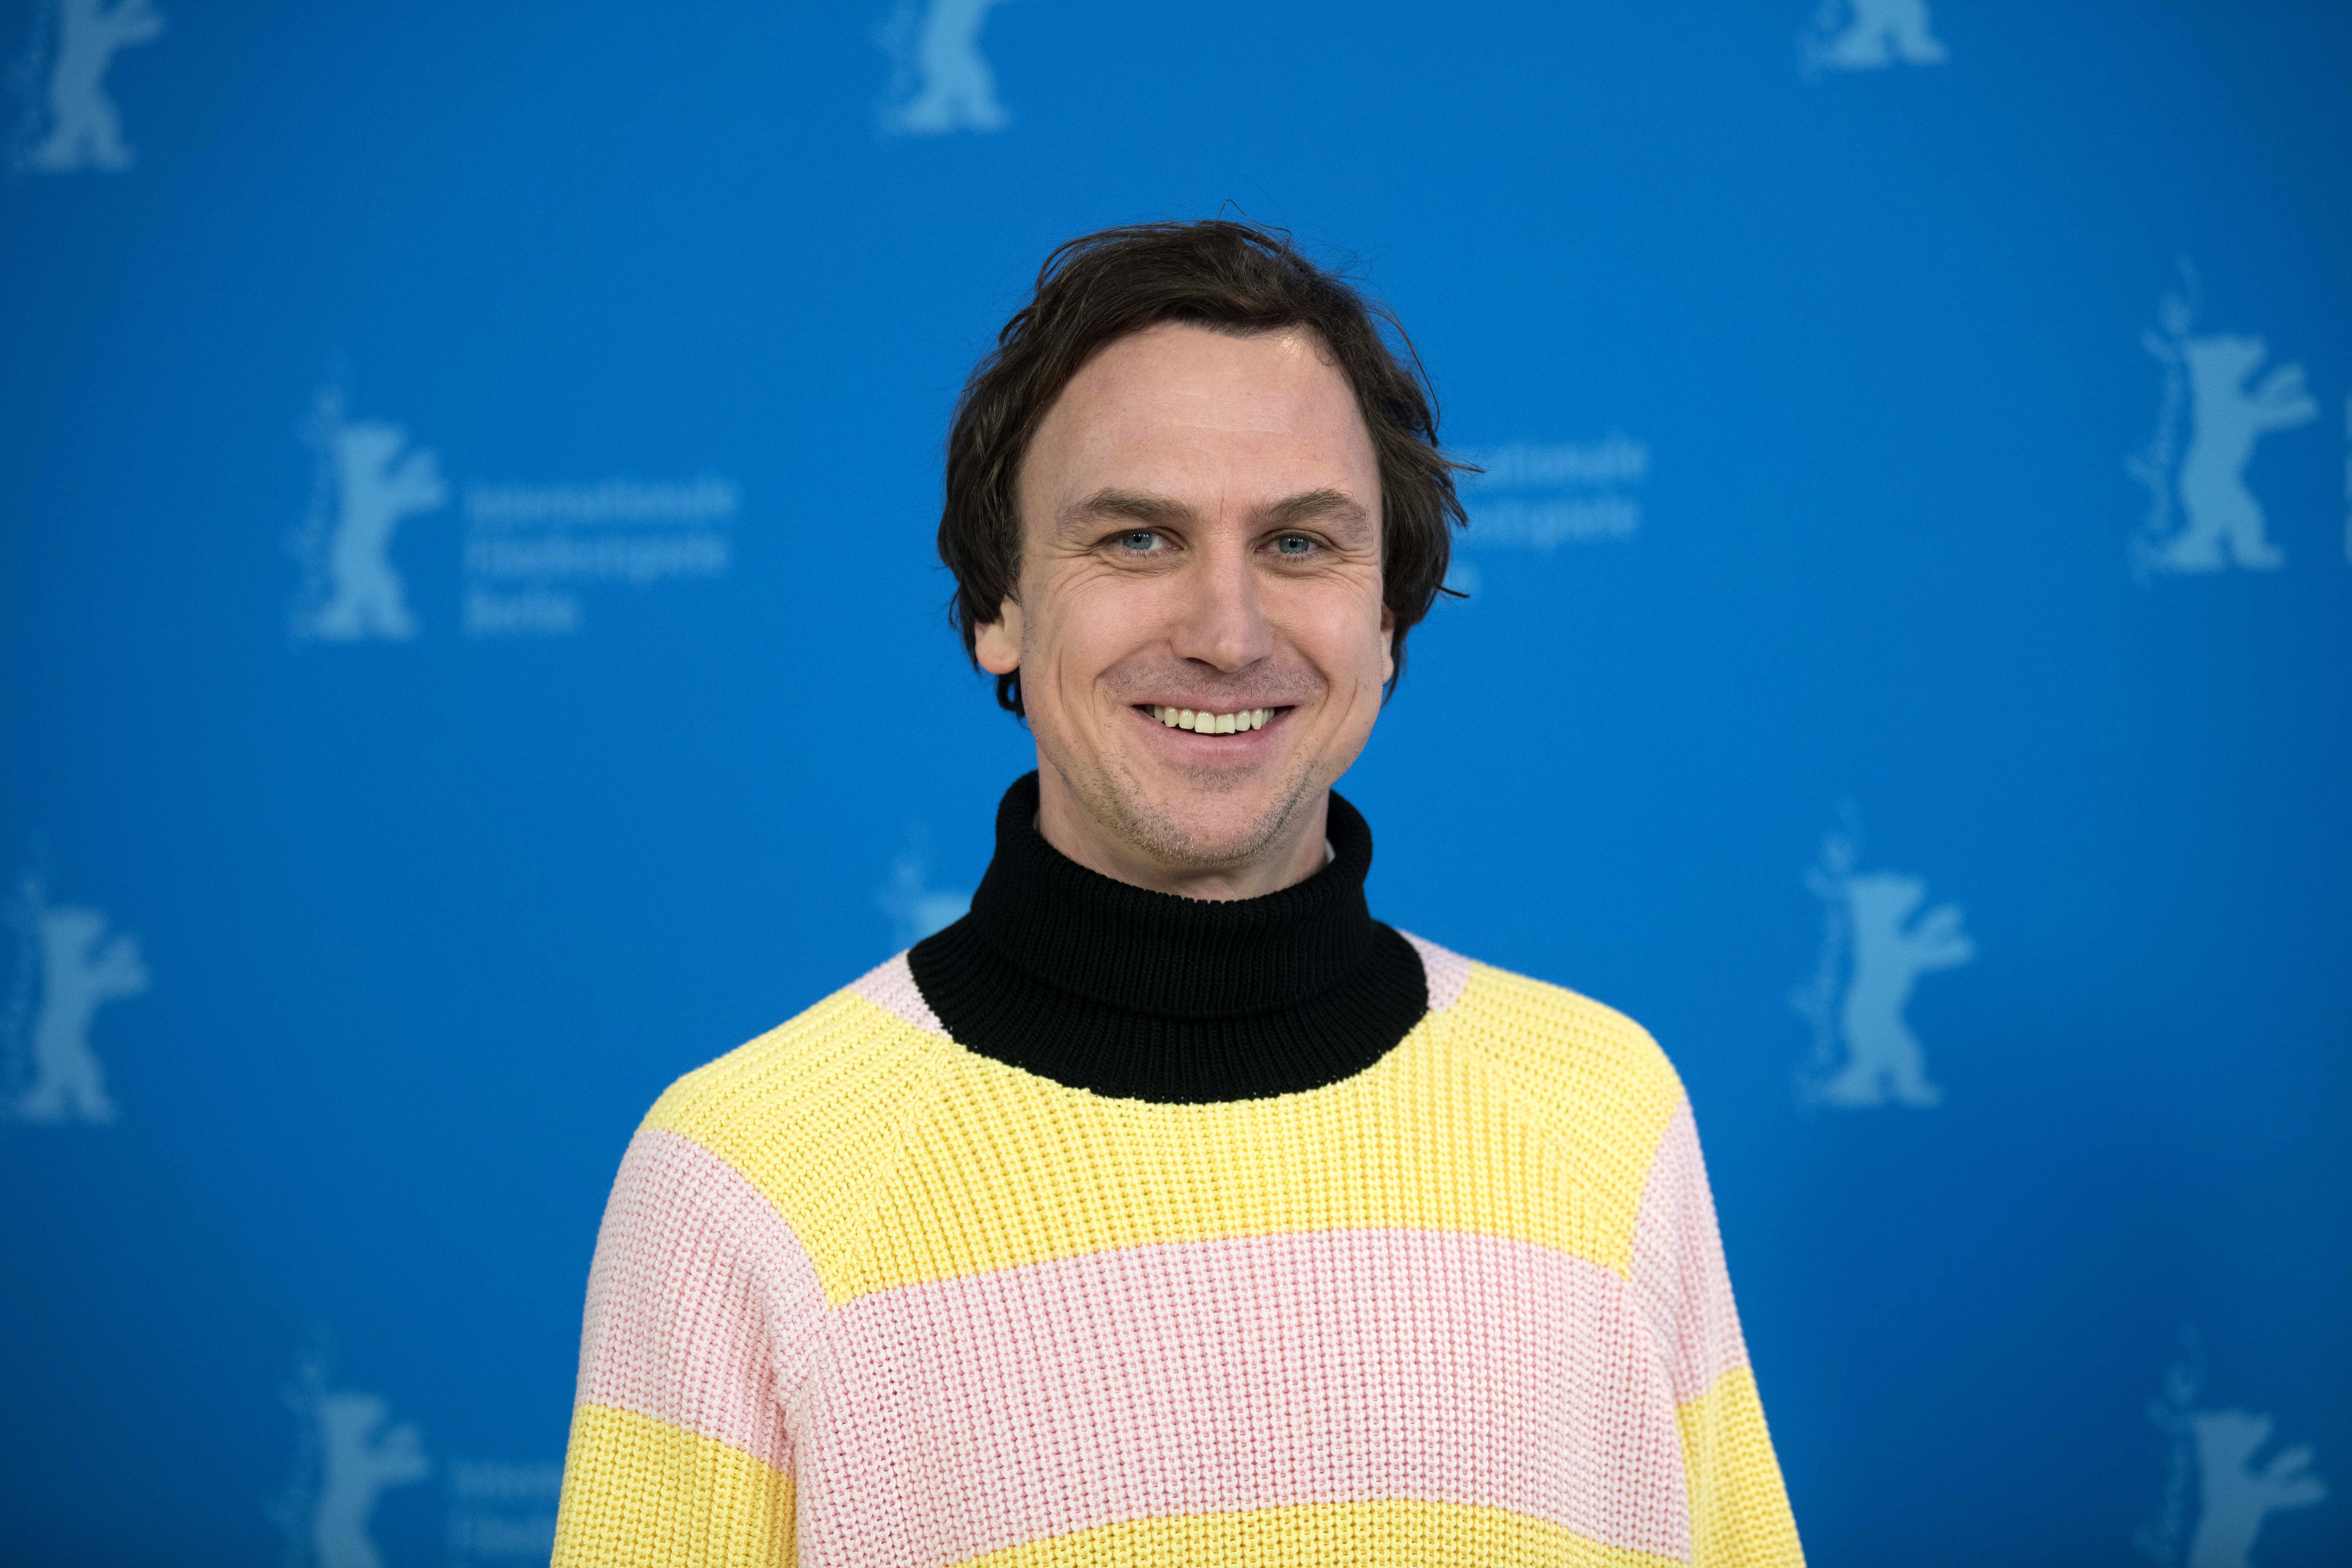 Der Schauspieler Lars Eidinger. Das Internationale Filmfestival findet ab 20.02 statt. bis 01.03.2020. | Quelle: Getty Images